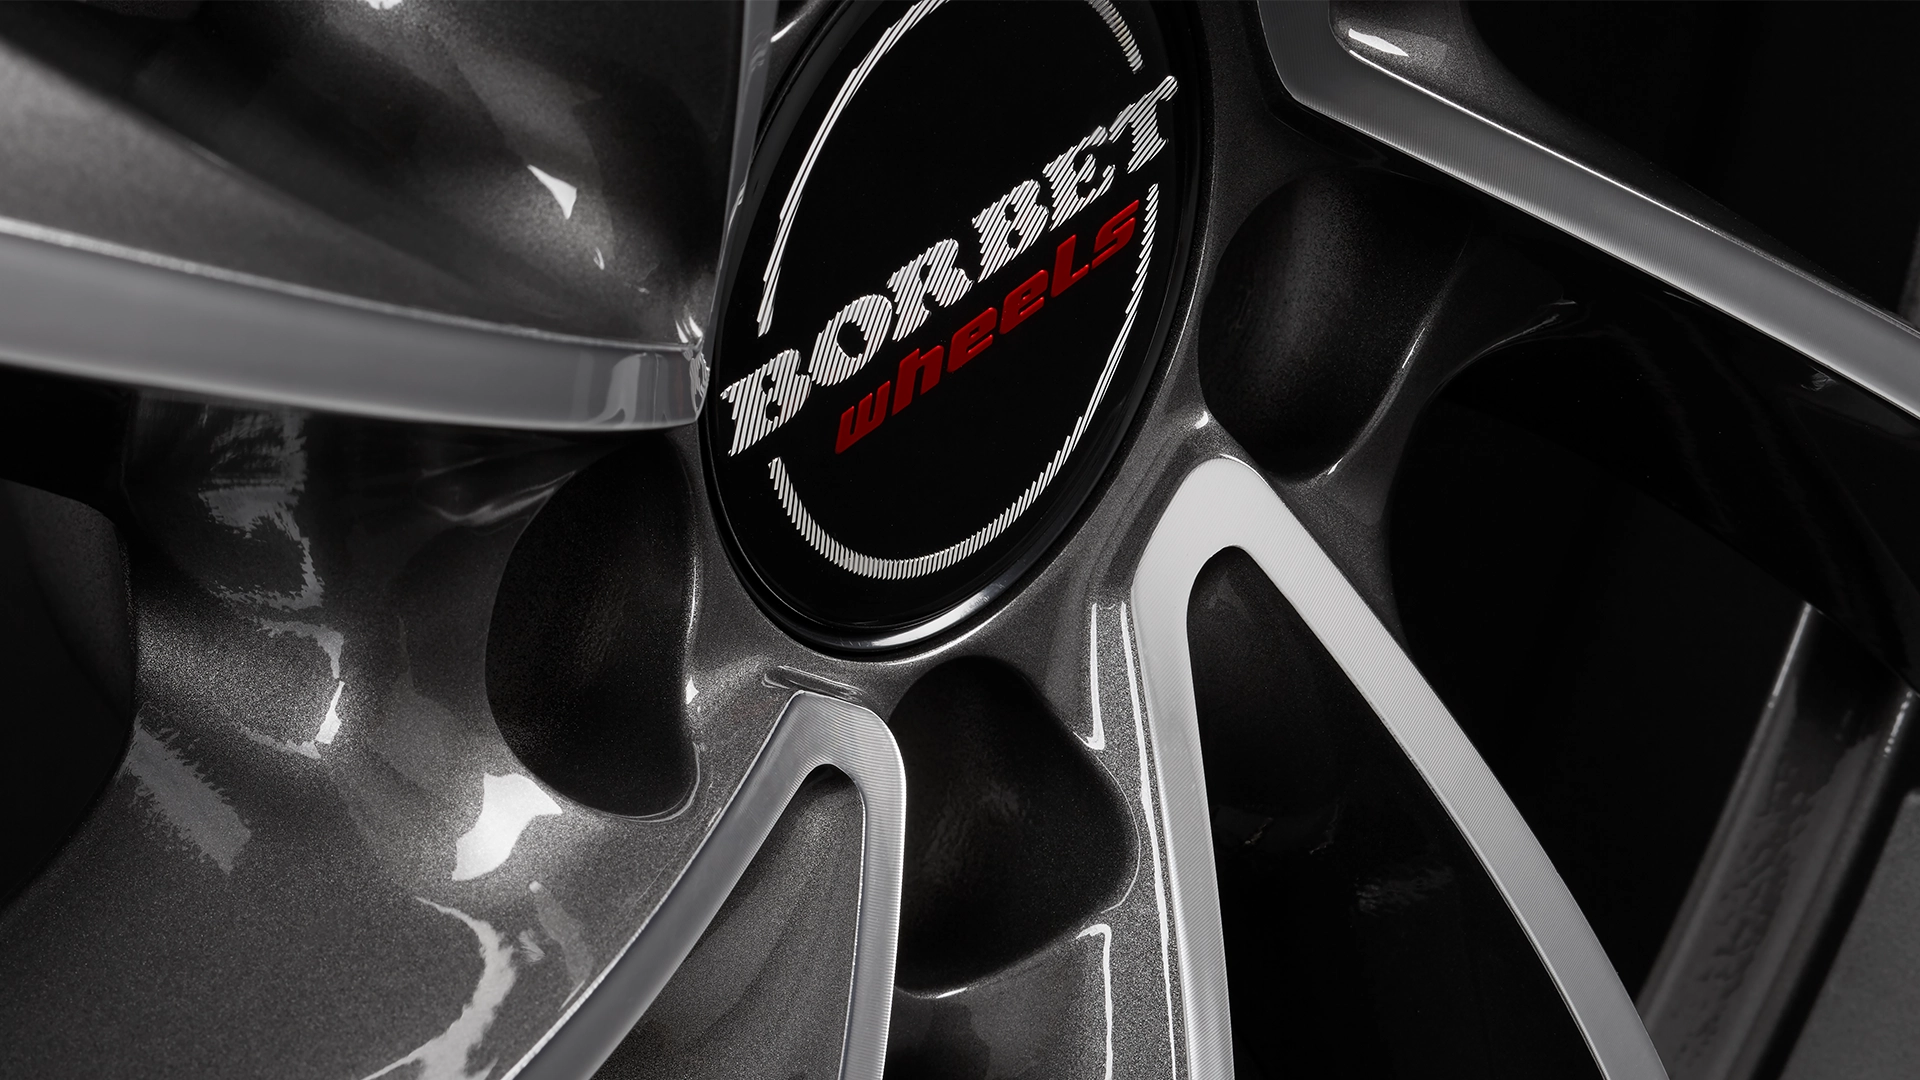 BORBET VTX graphite polished Details